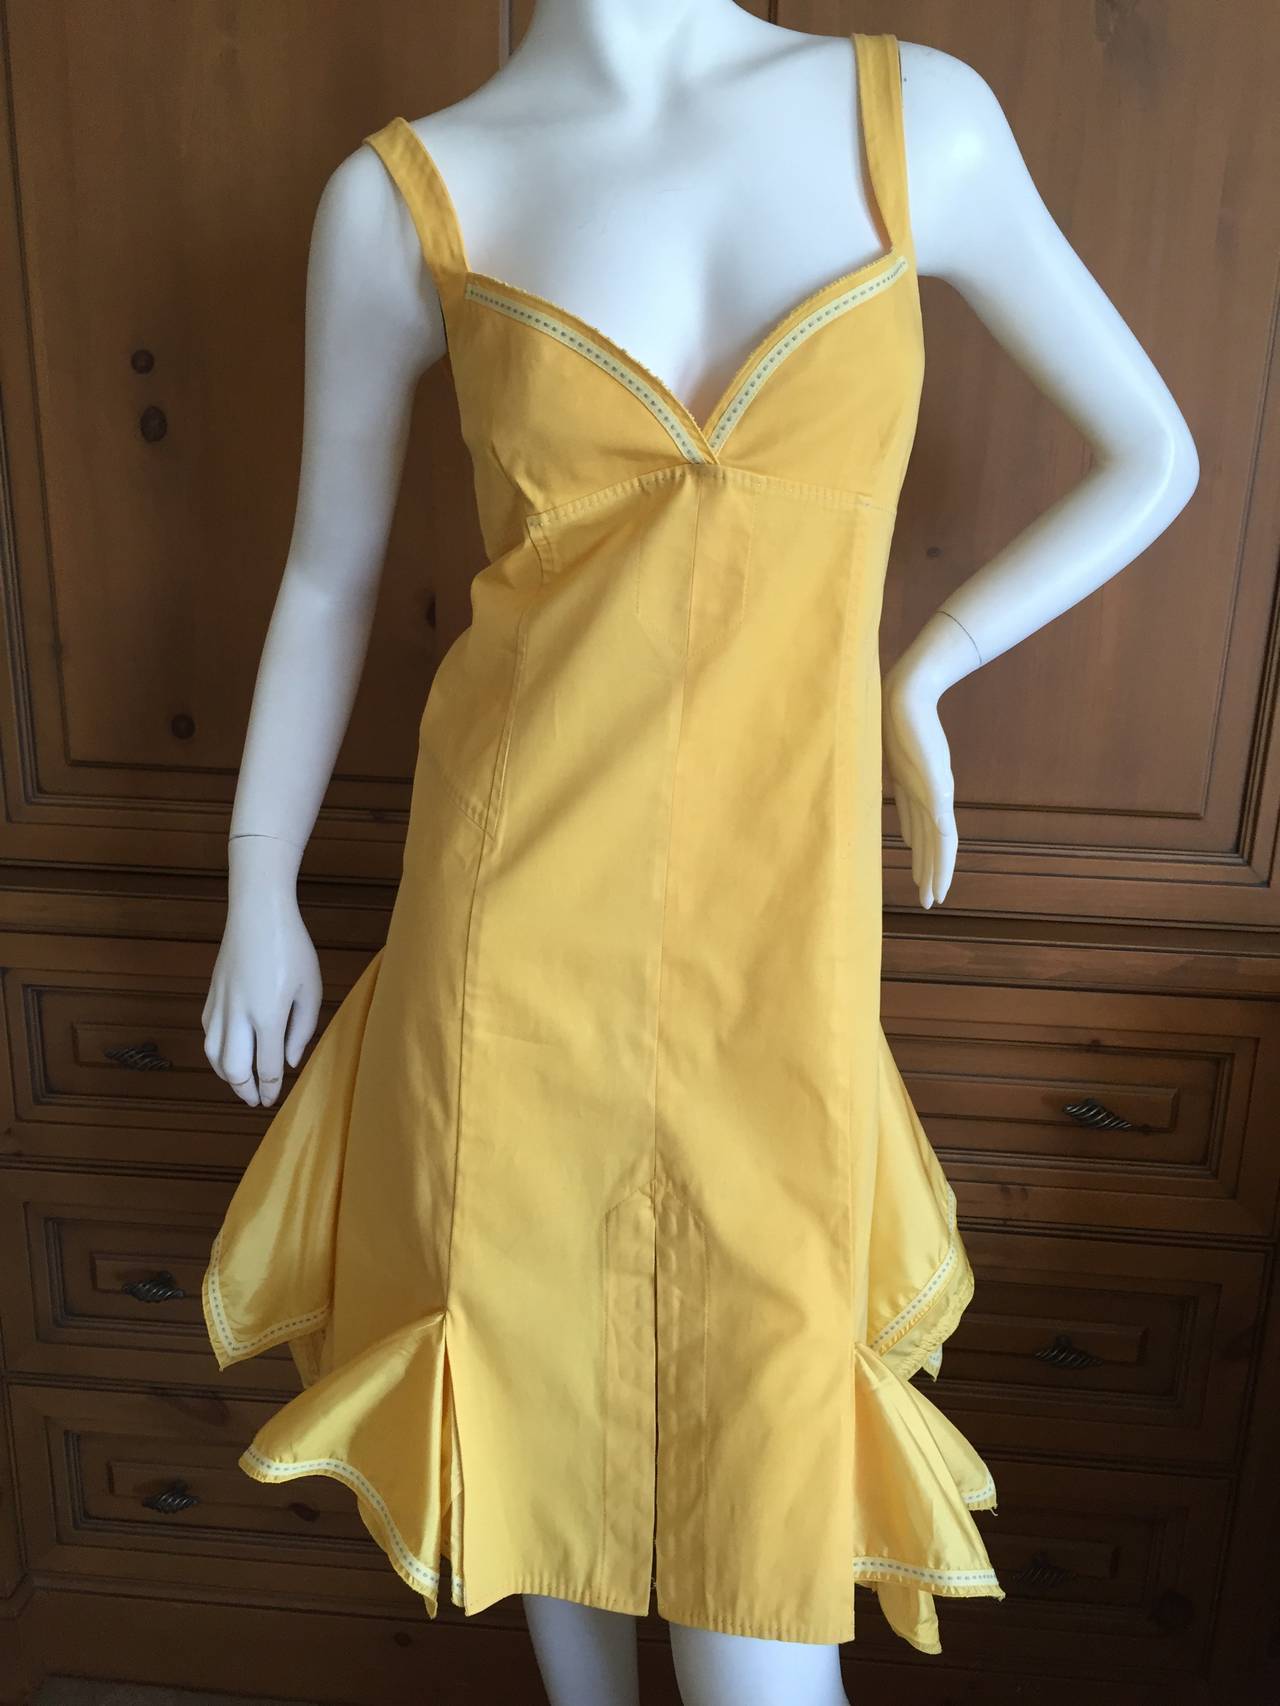 Alexander McQueen Golden Yellow Sun Dress w Corset Lacing.
Cotton with silk inserts along the hem